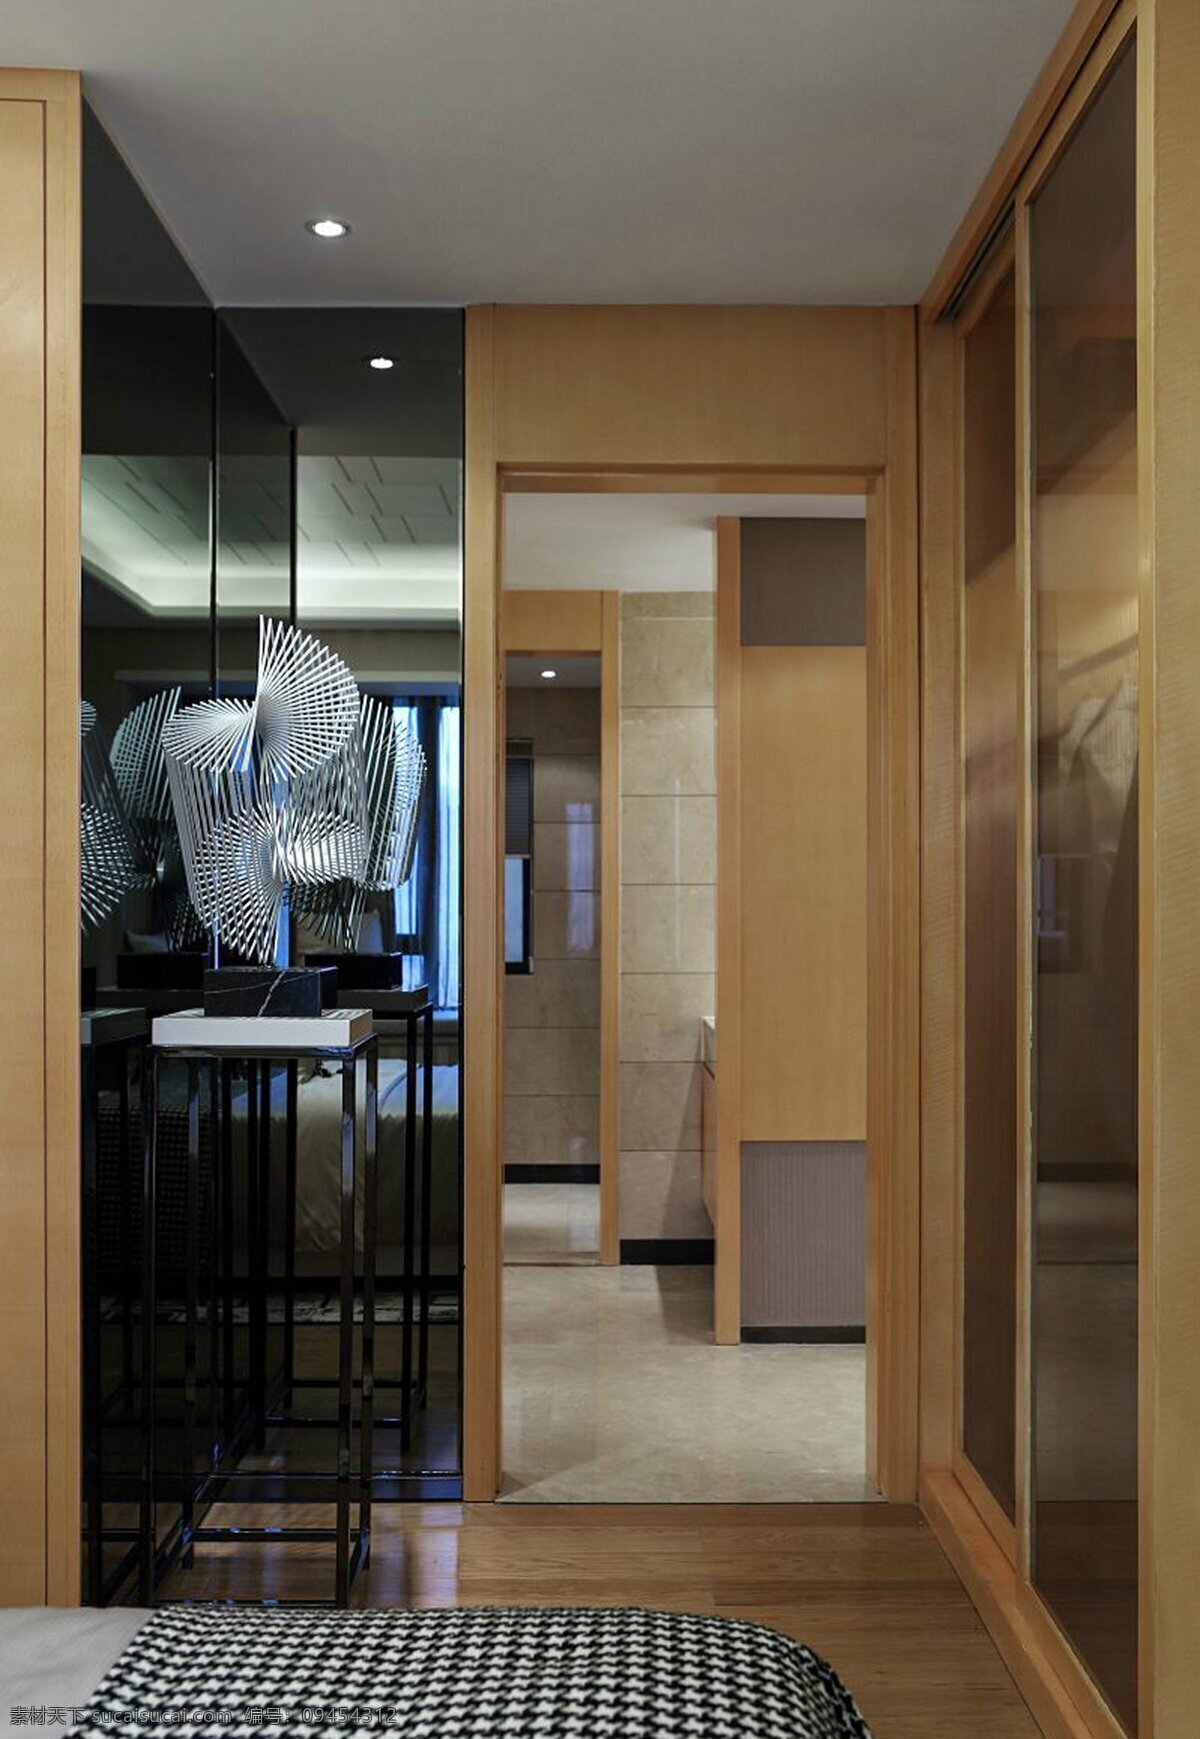 简约 风 室内设计 卧室 镜子 效果图 现代 家装 家居 家具